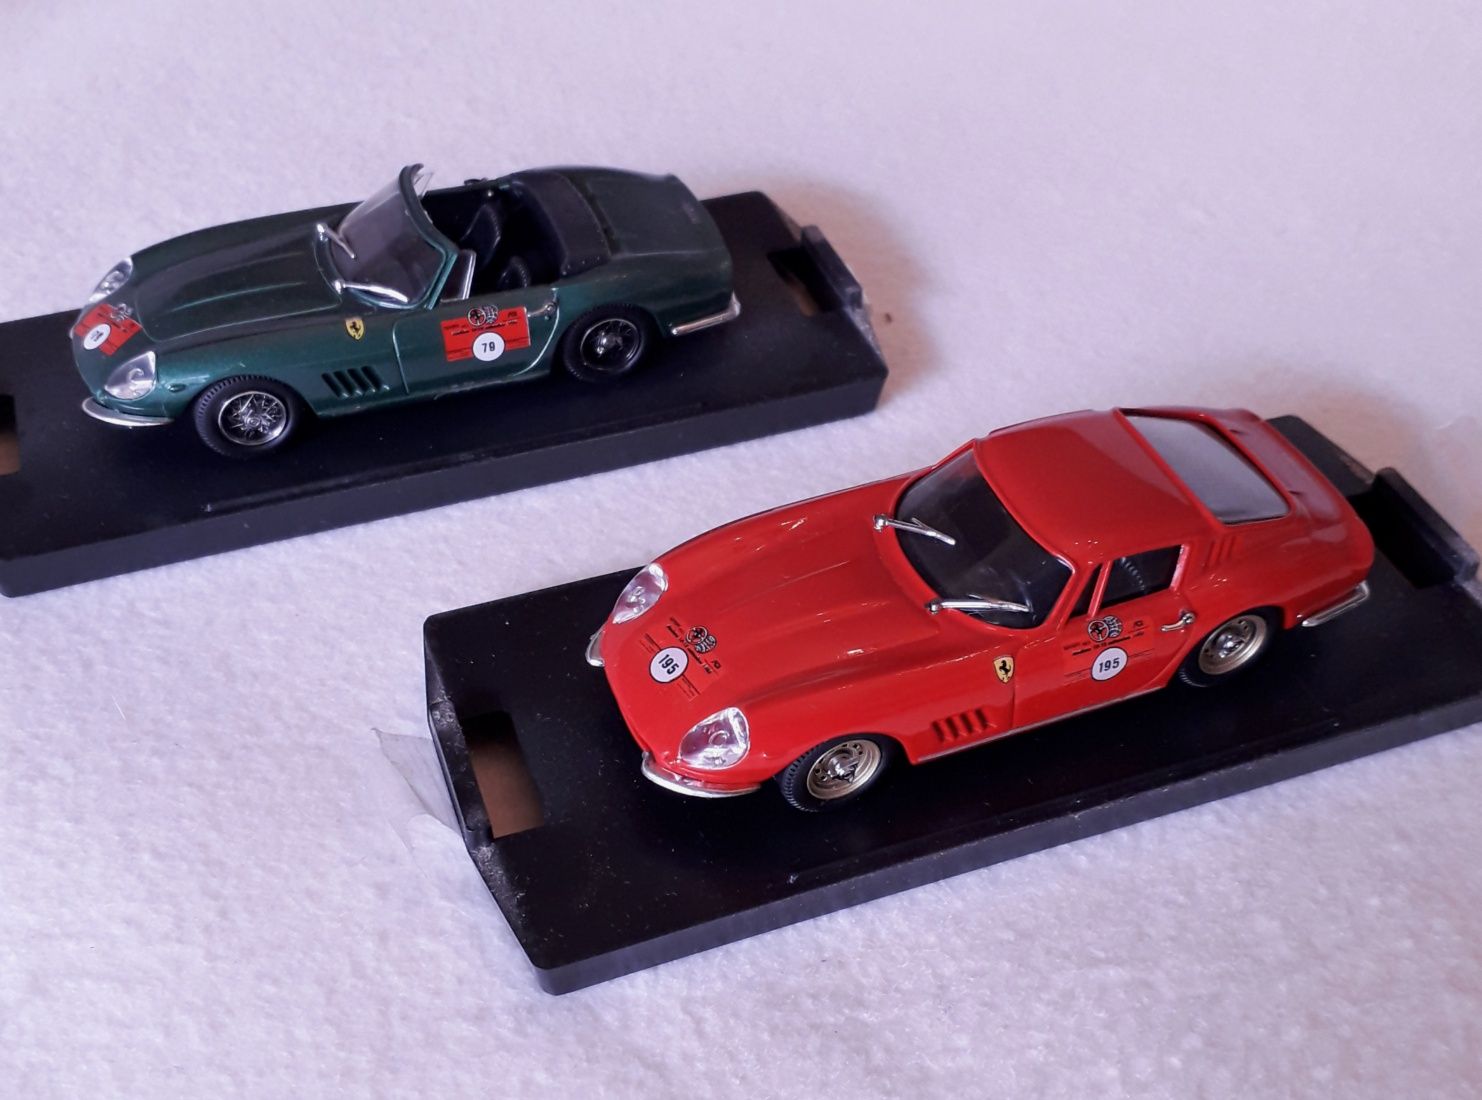 Miniaturas Ferrari escala 1/43